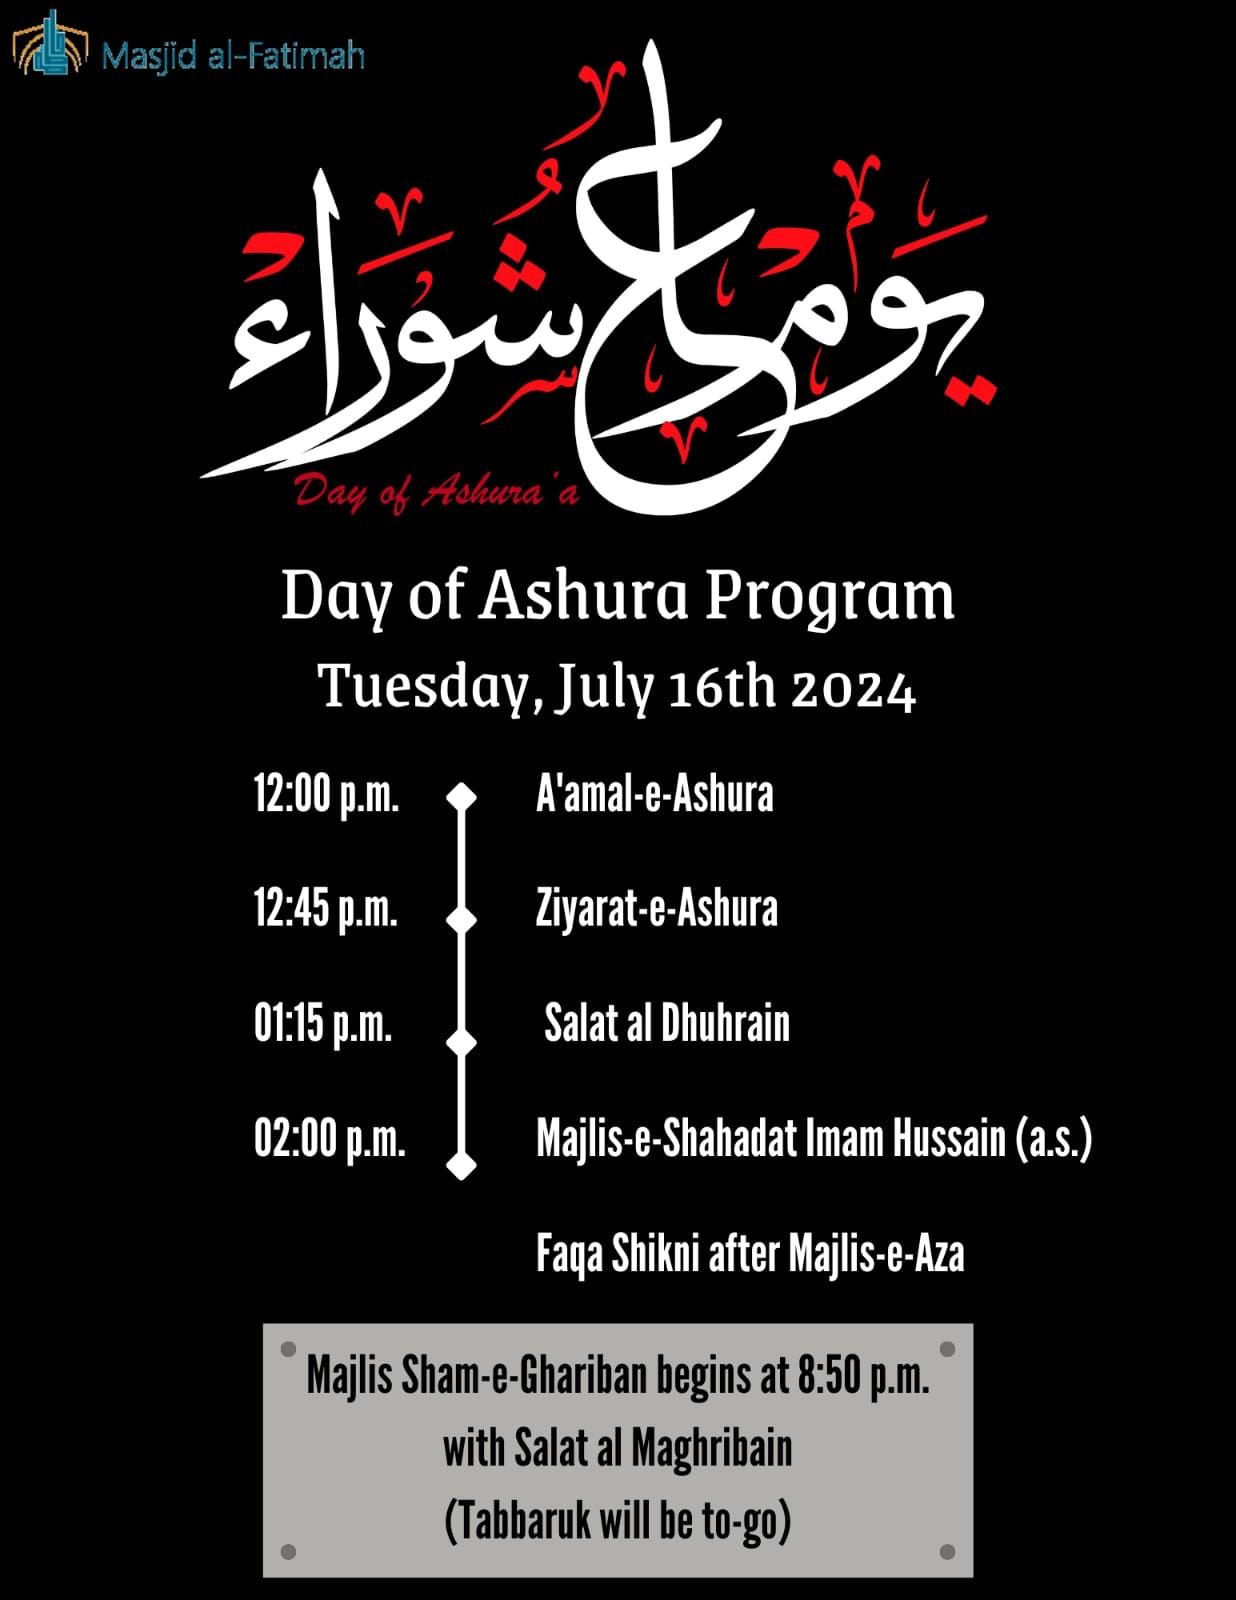 Day of Ashura Program